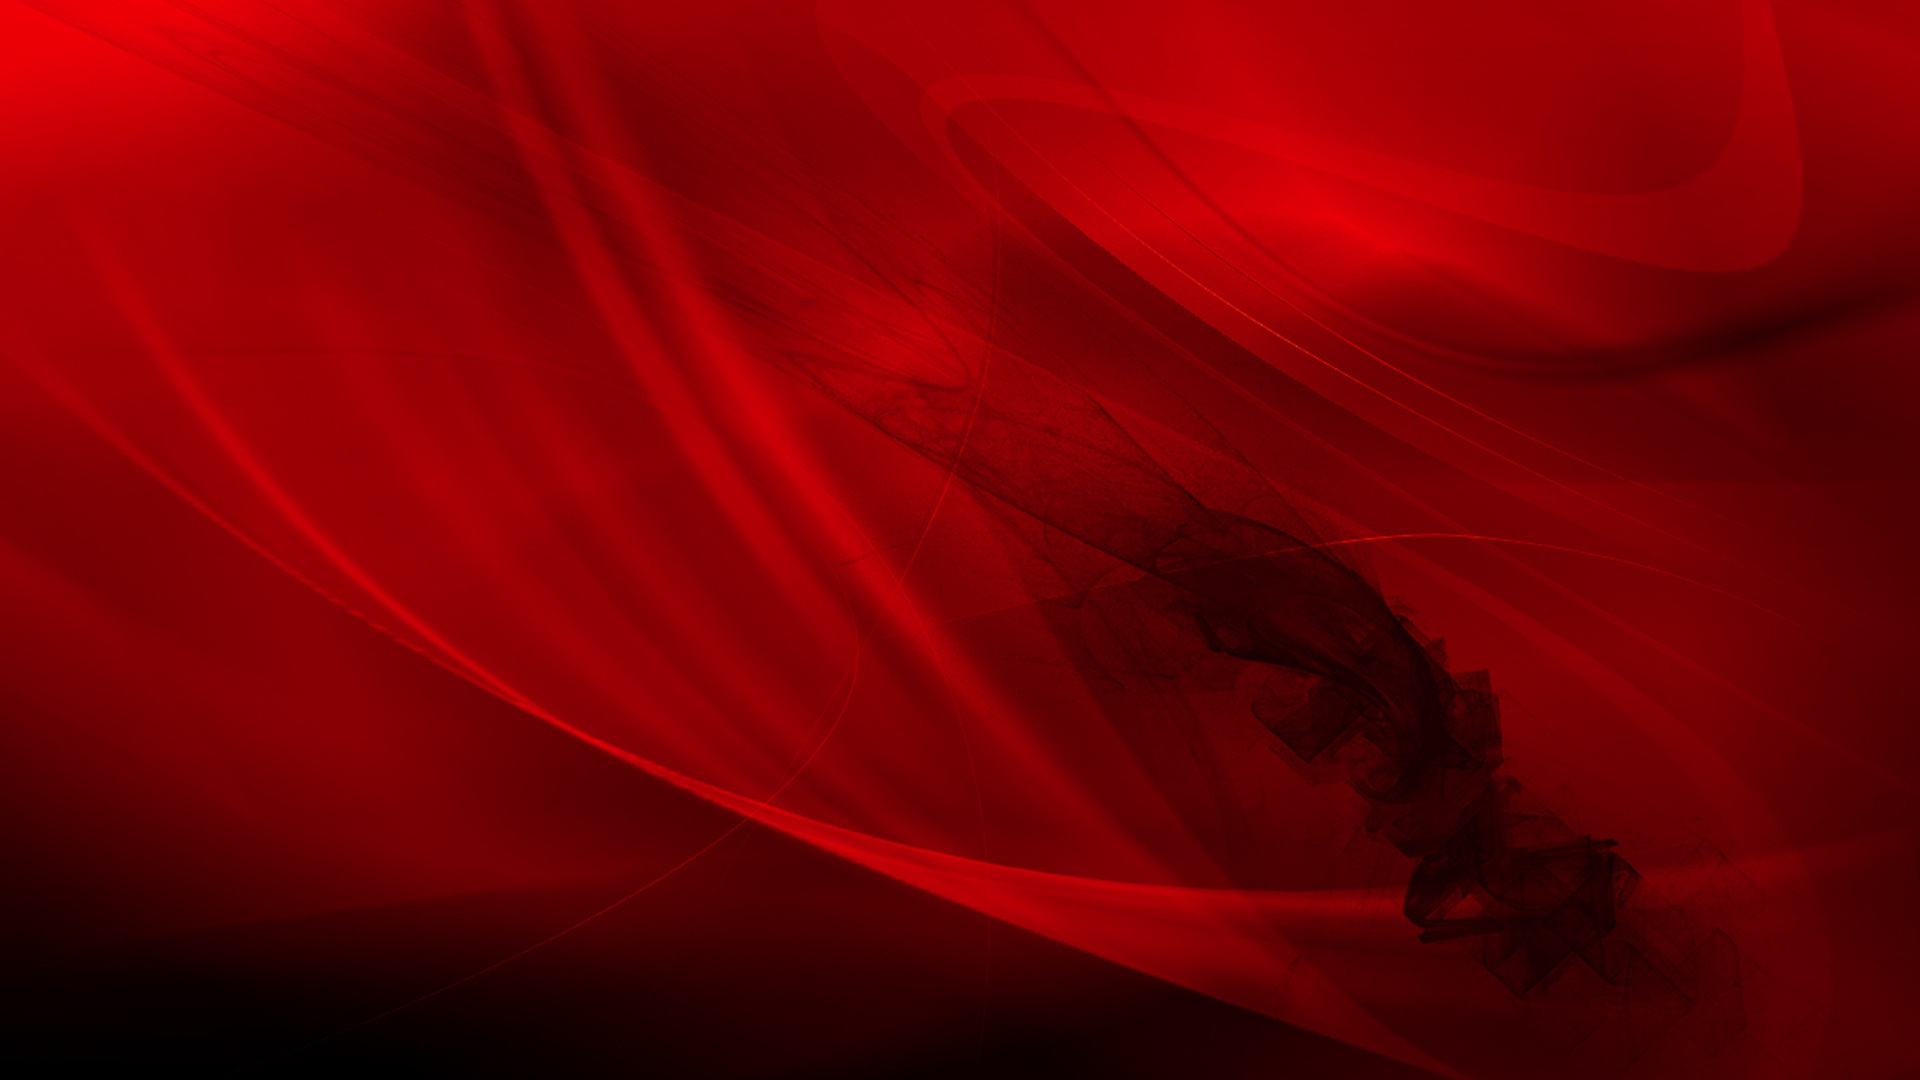 Hình ảnh với background đỏ trơn rực rỡ này sẽ khiến bạn cảm thấy hưng phấn và tràn đầy năng lượng! Được thiết kế với màu sắc đậm chất, ảnh sẽ làm nổi bật bất kỳ chi tiết nào.